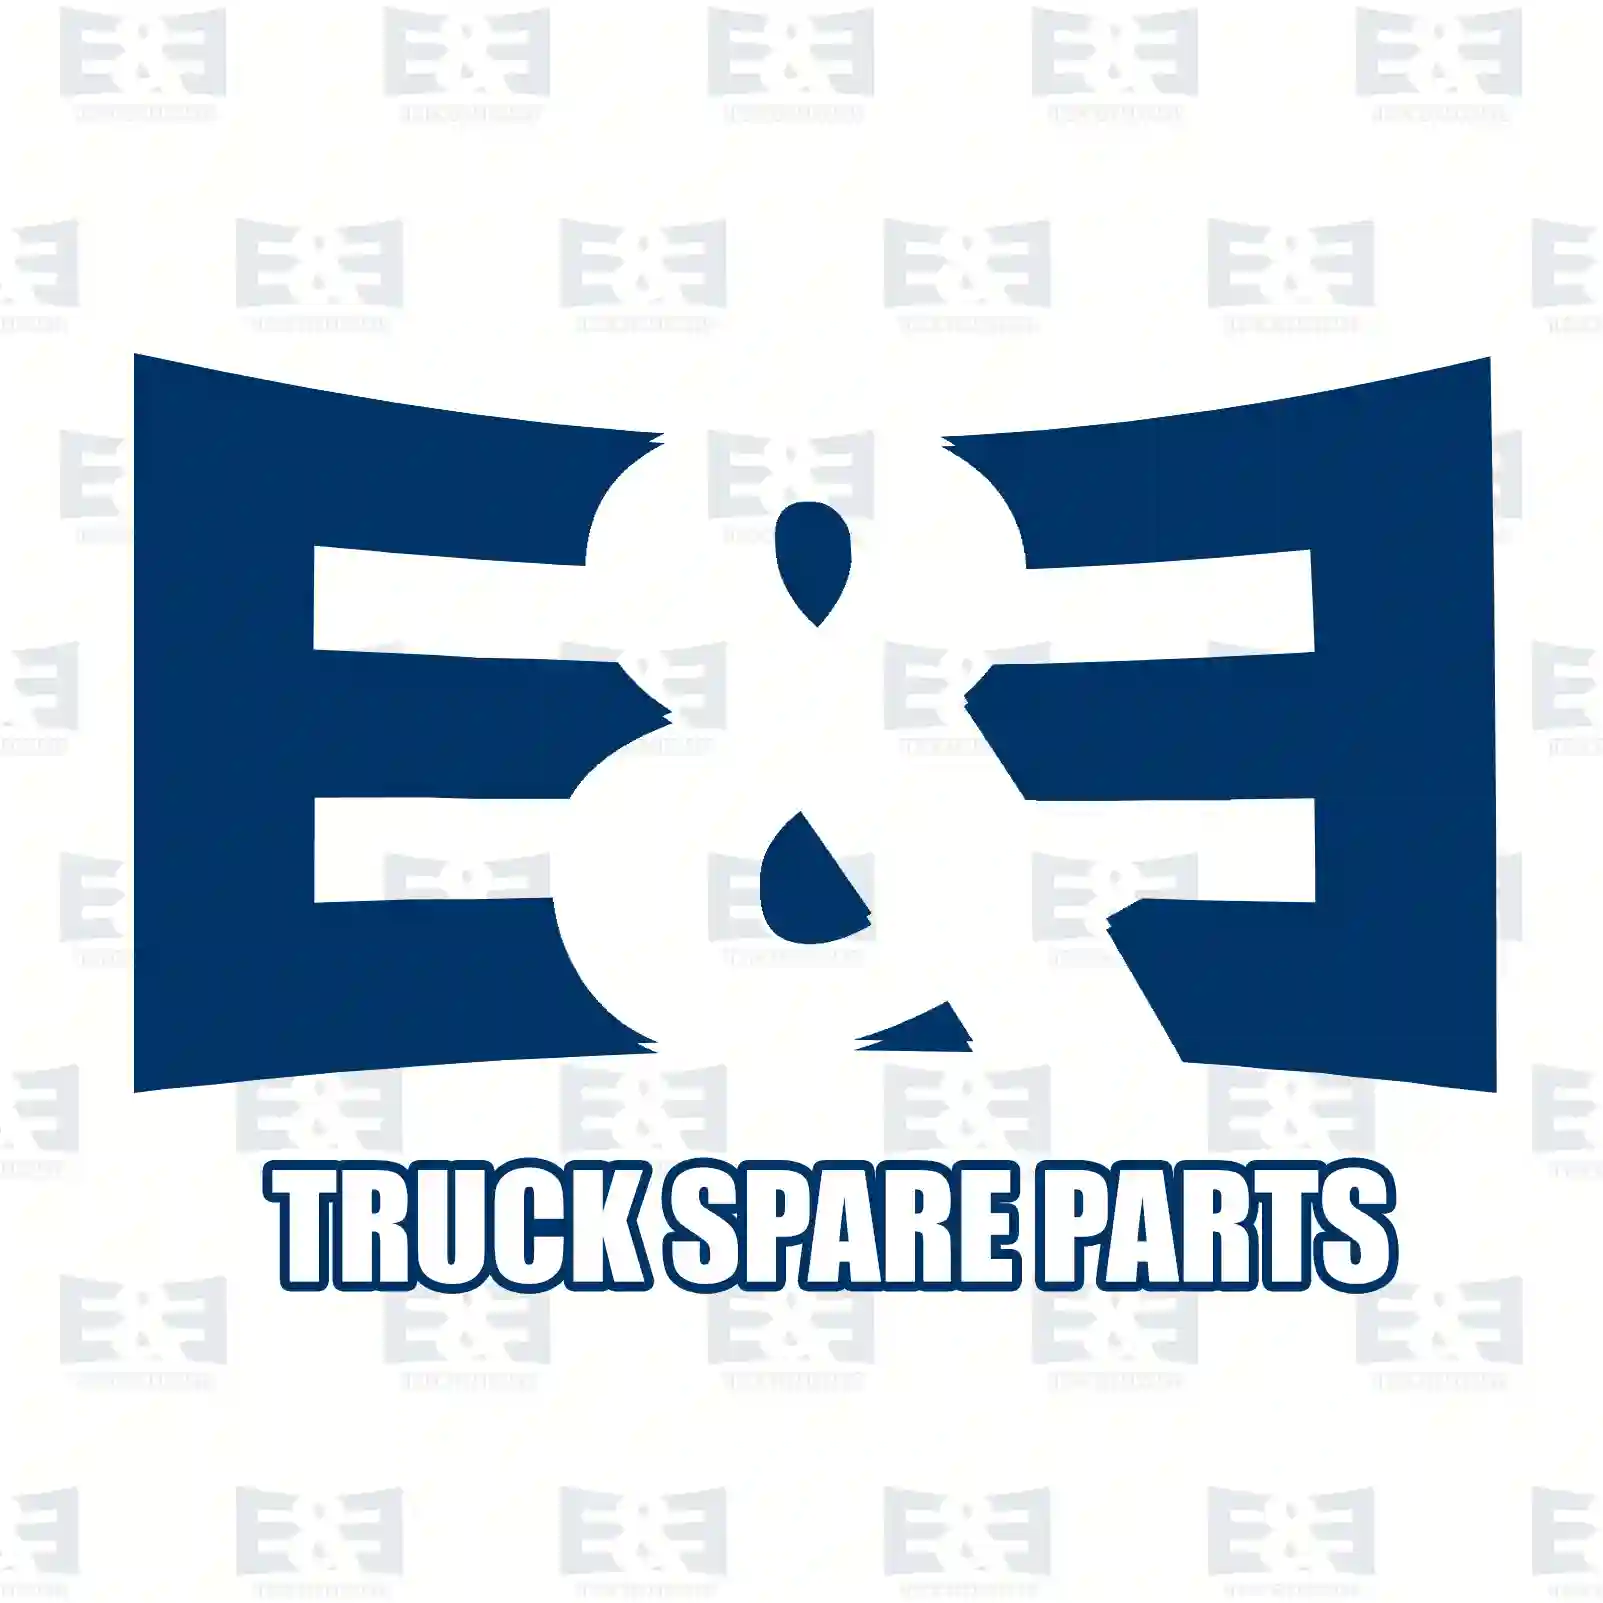 Brake caliper, reman. / without old core, 2E2294927, LRG729, 20523648, 20526991, 20713402, 21024419, 21487595 ||  2E2294927 E&E Truck Spare Parts | Truck Spare Parts, Auotomotive Spare Parts Brake caliper, reman. / without old core, 2E2294927, LRG729, 20523648, 20526991, 20713402, 21024419, 21487595 ||  2E2294927 E&E Truck Spare Parts | Truck Spare Parts, Auotomotive Spare Parts